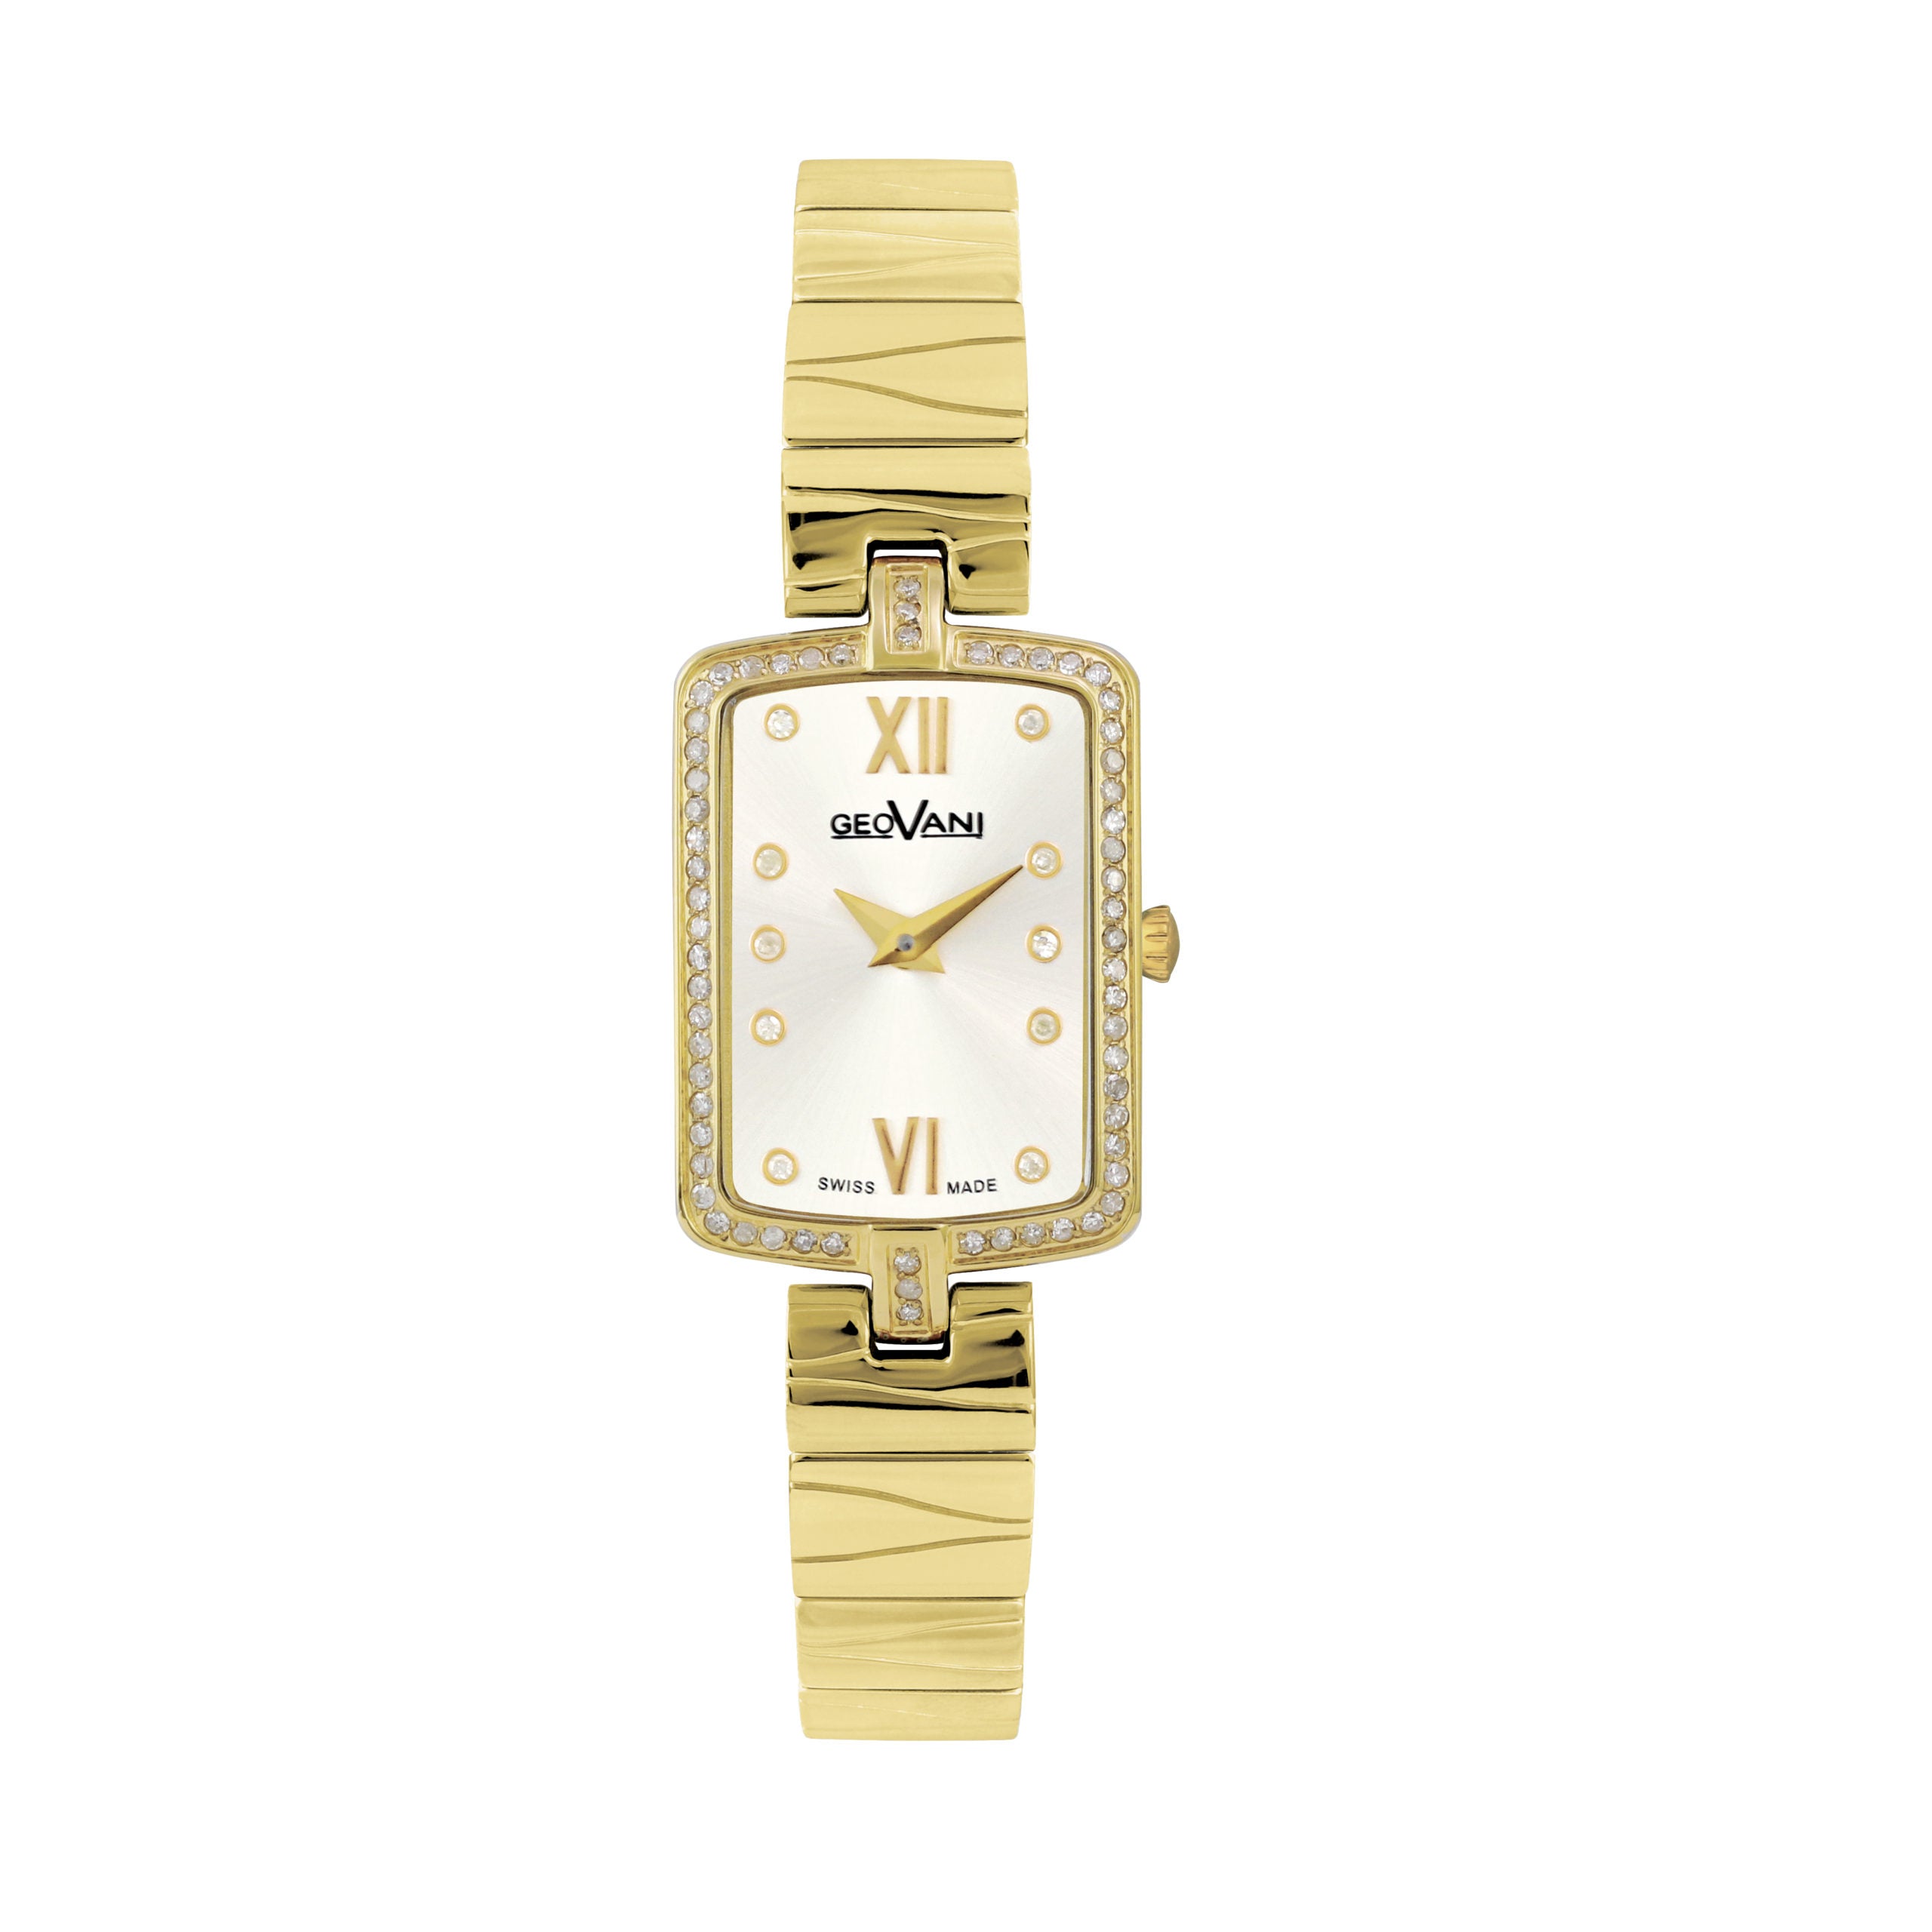 Giovanni Women's Swiss Quartz Watch with White Dial - GEO-0006